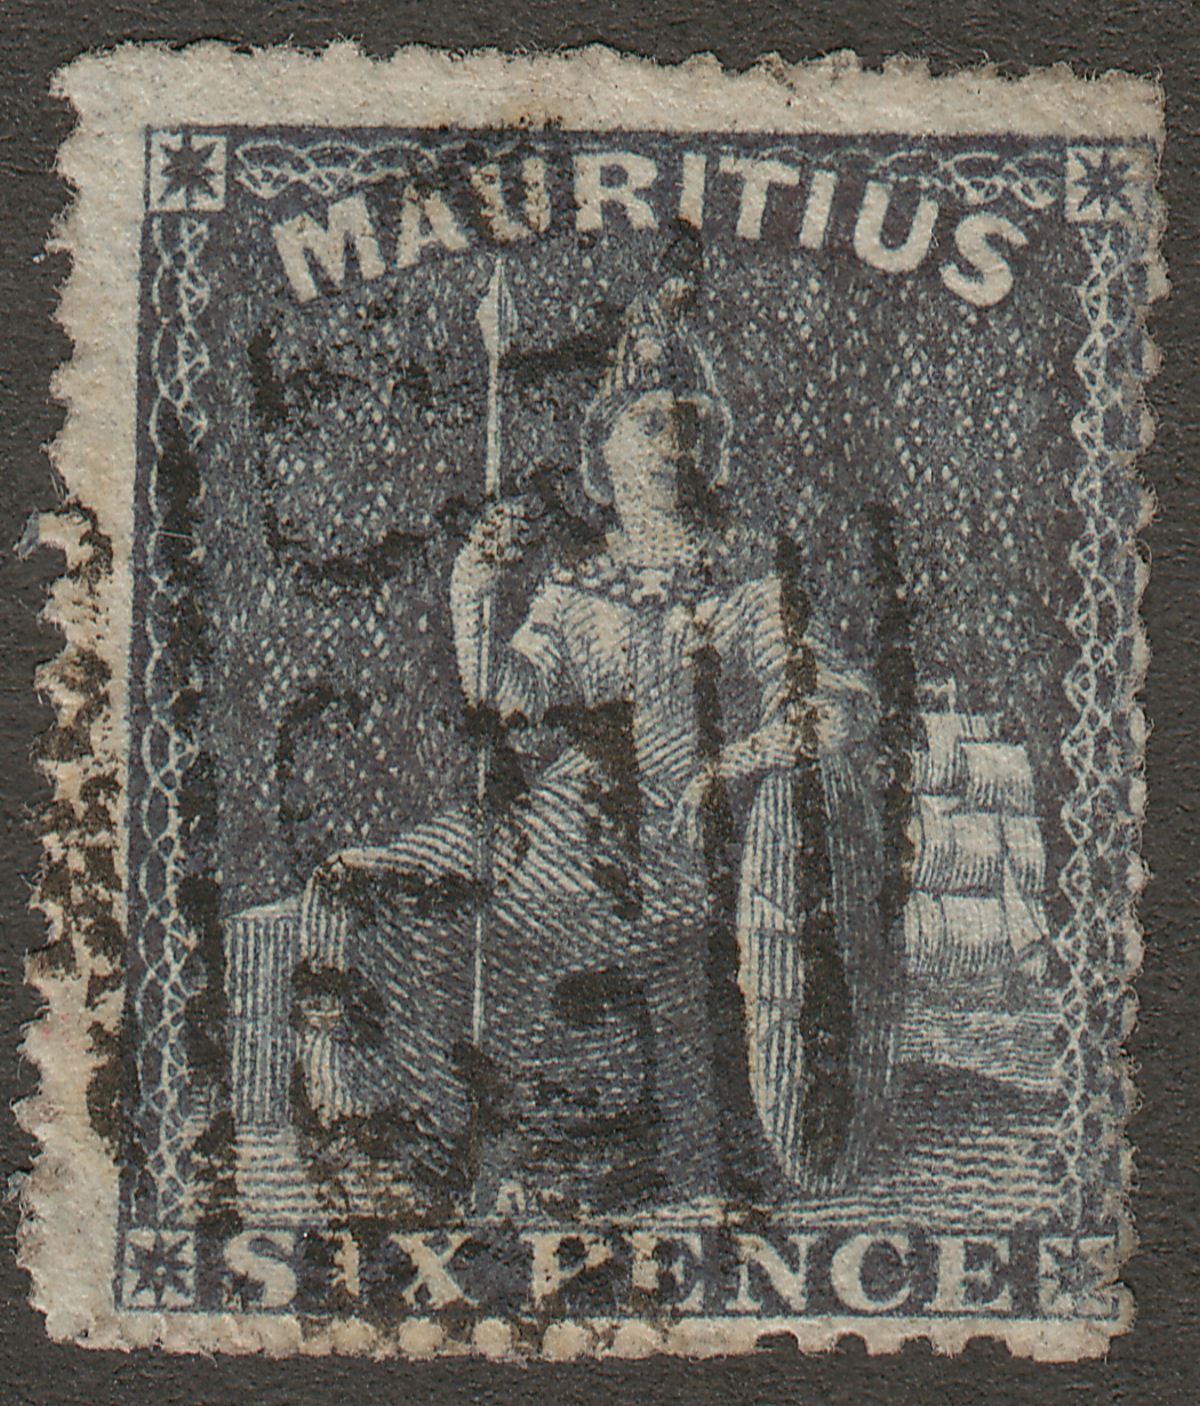 Mauritius 1862 QV Britannia 6d Slate Perforated Used SG54 cat £110